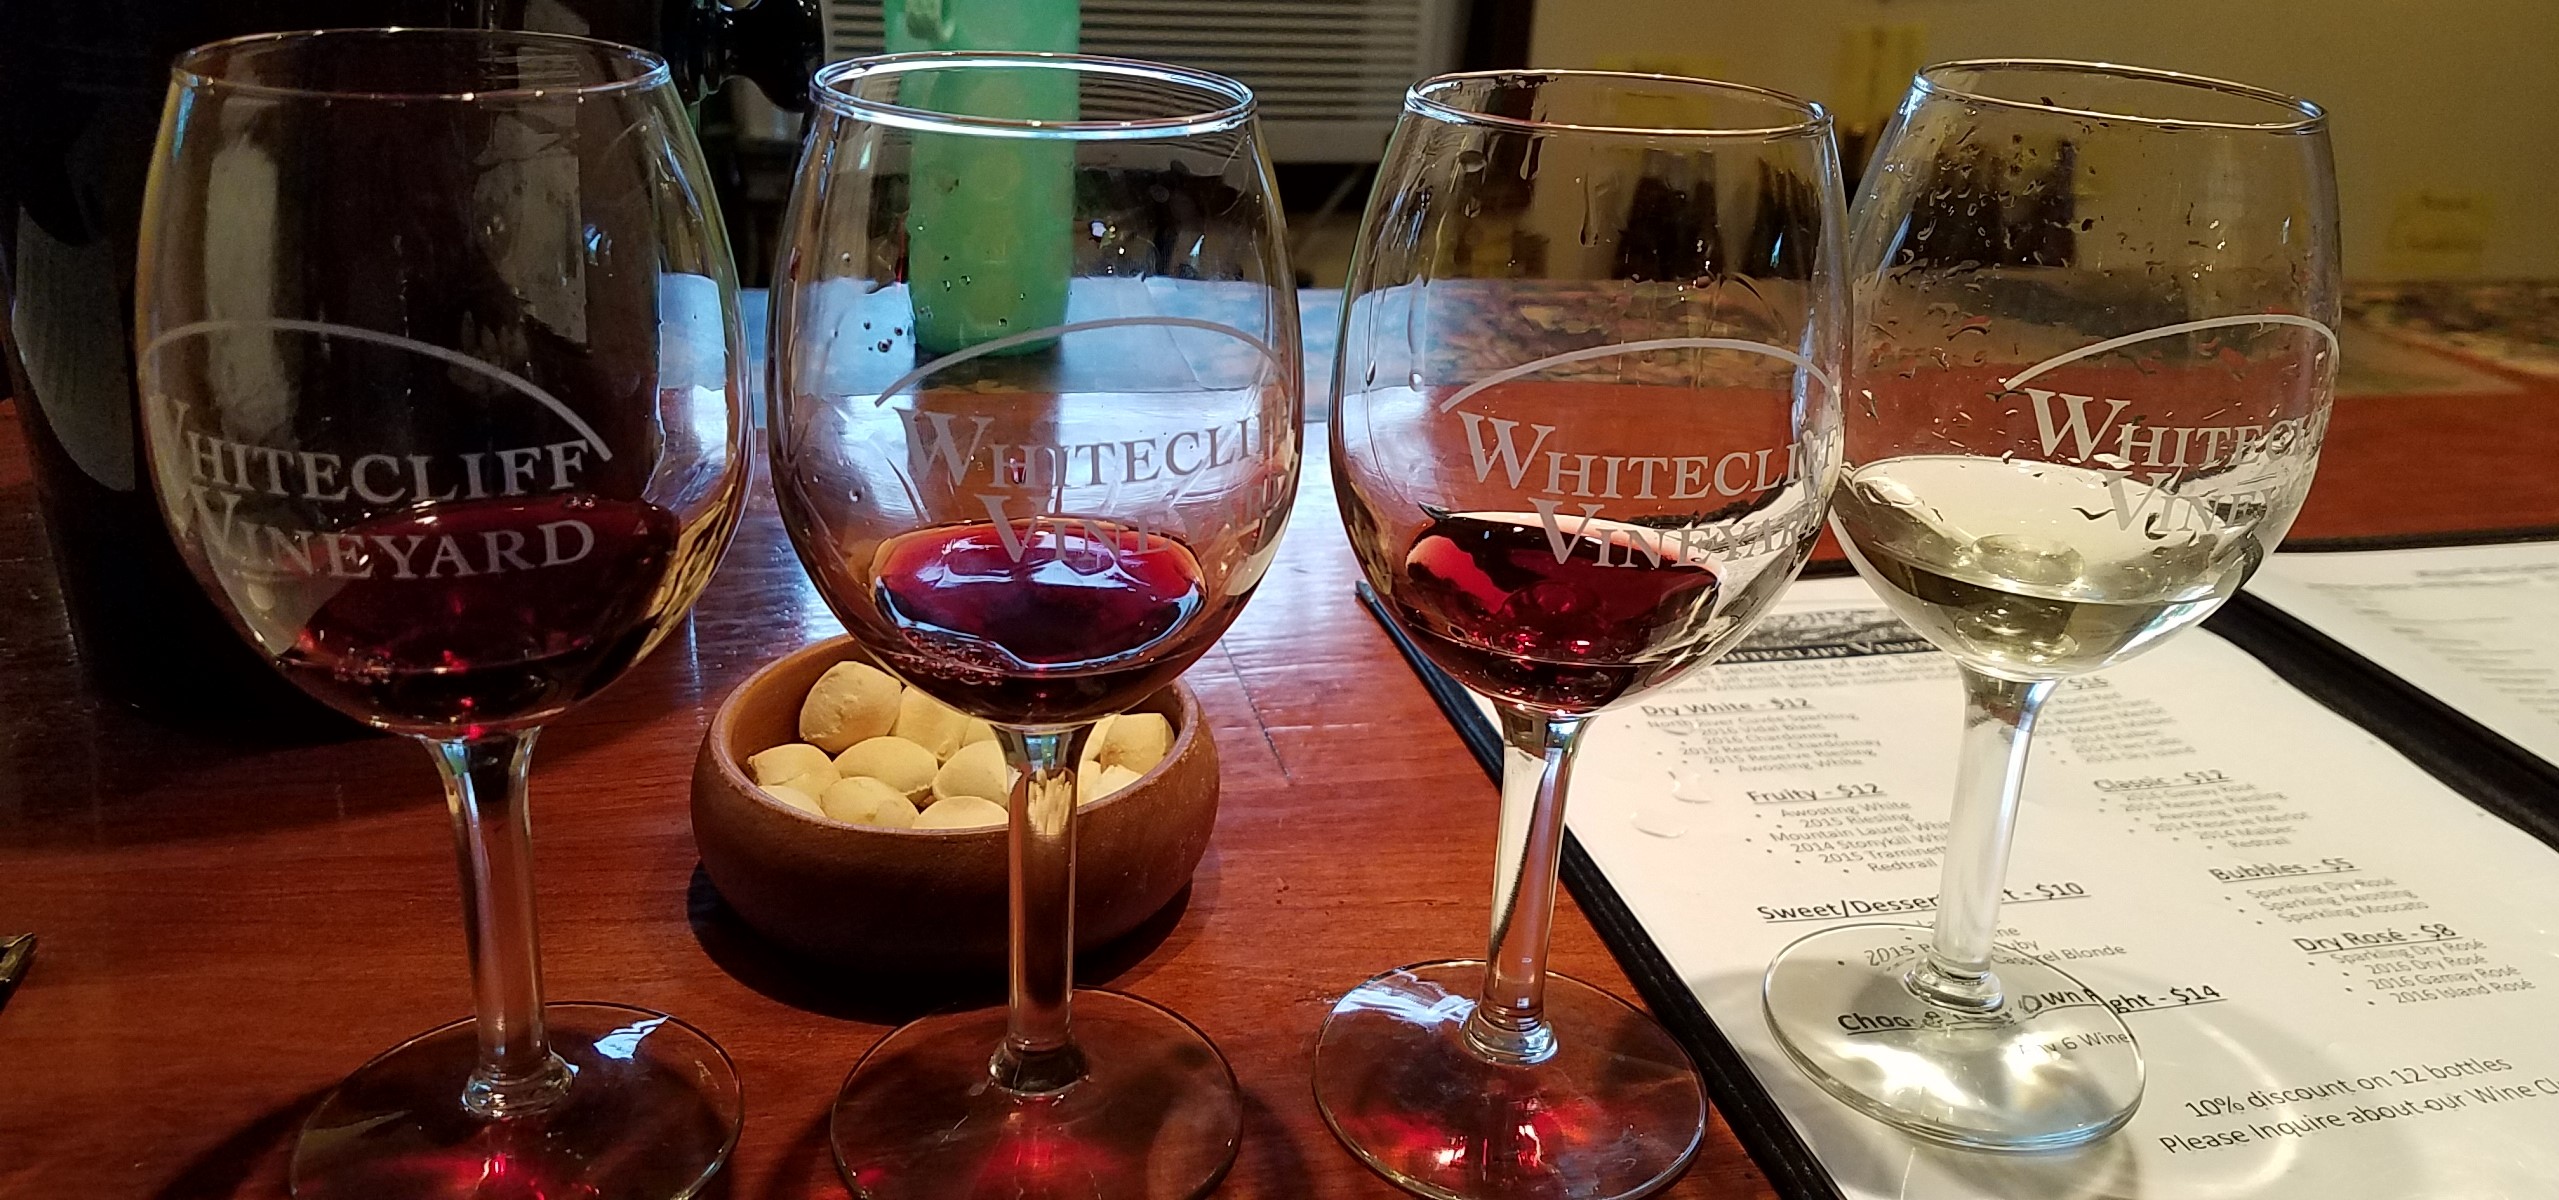 Whitecliff Vineyard and Winery - Shawangunk Wine Trail